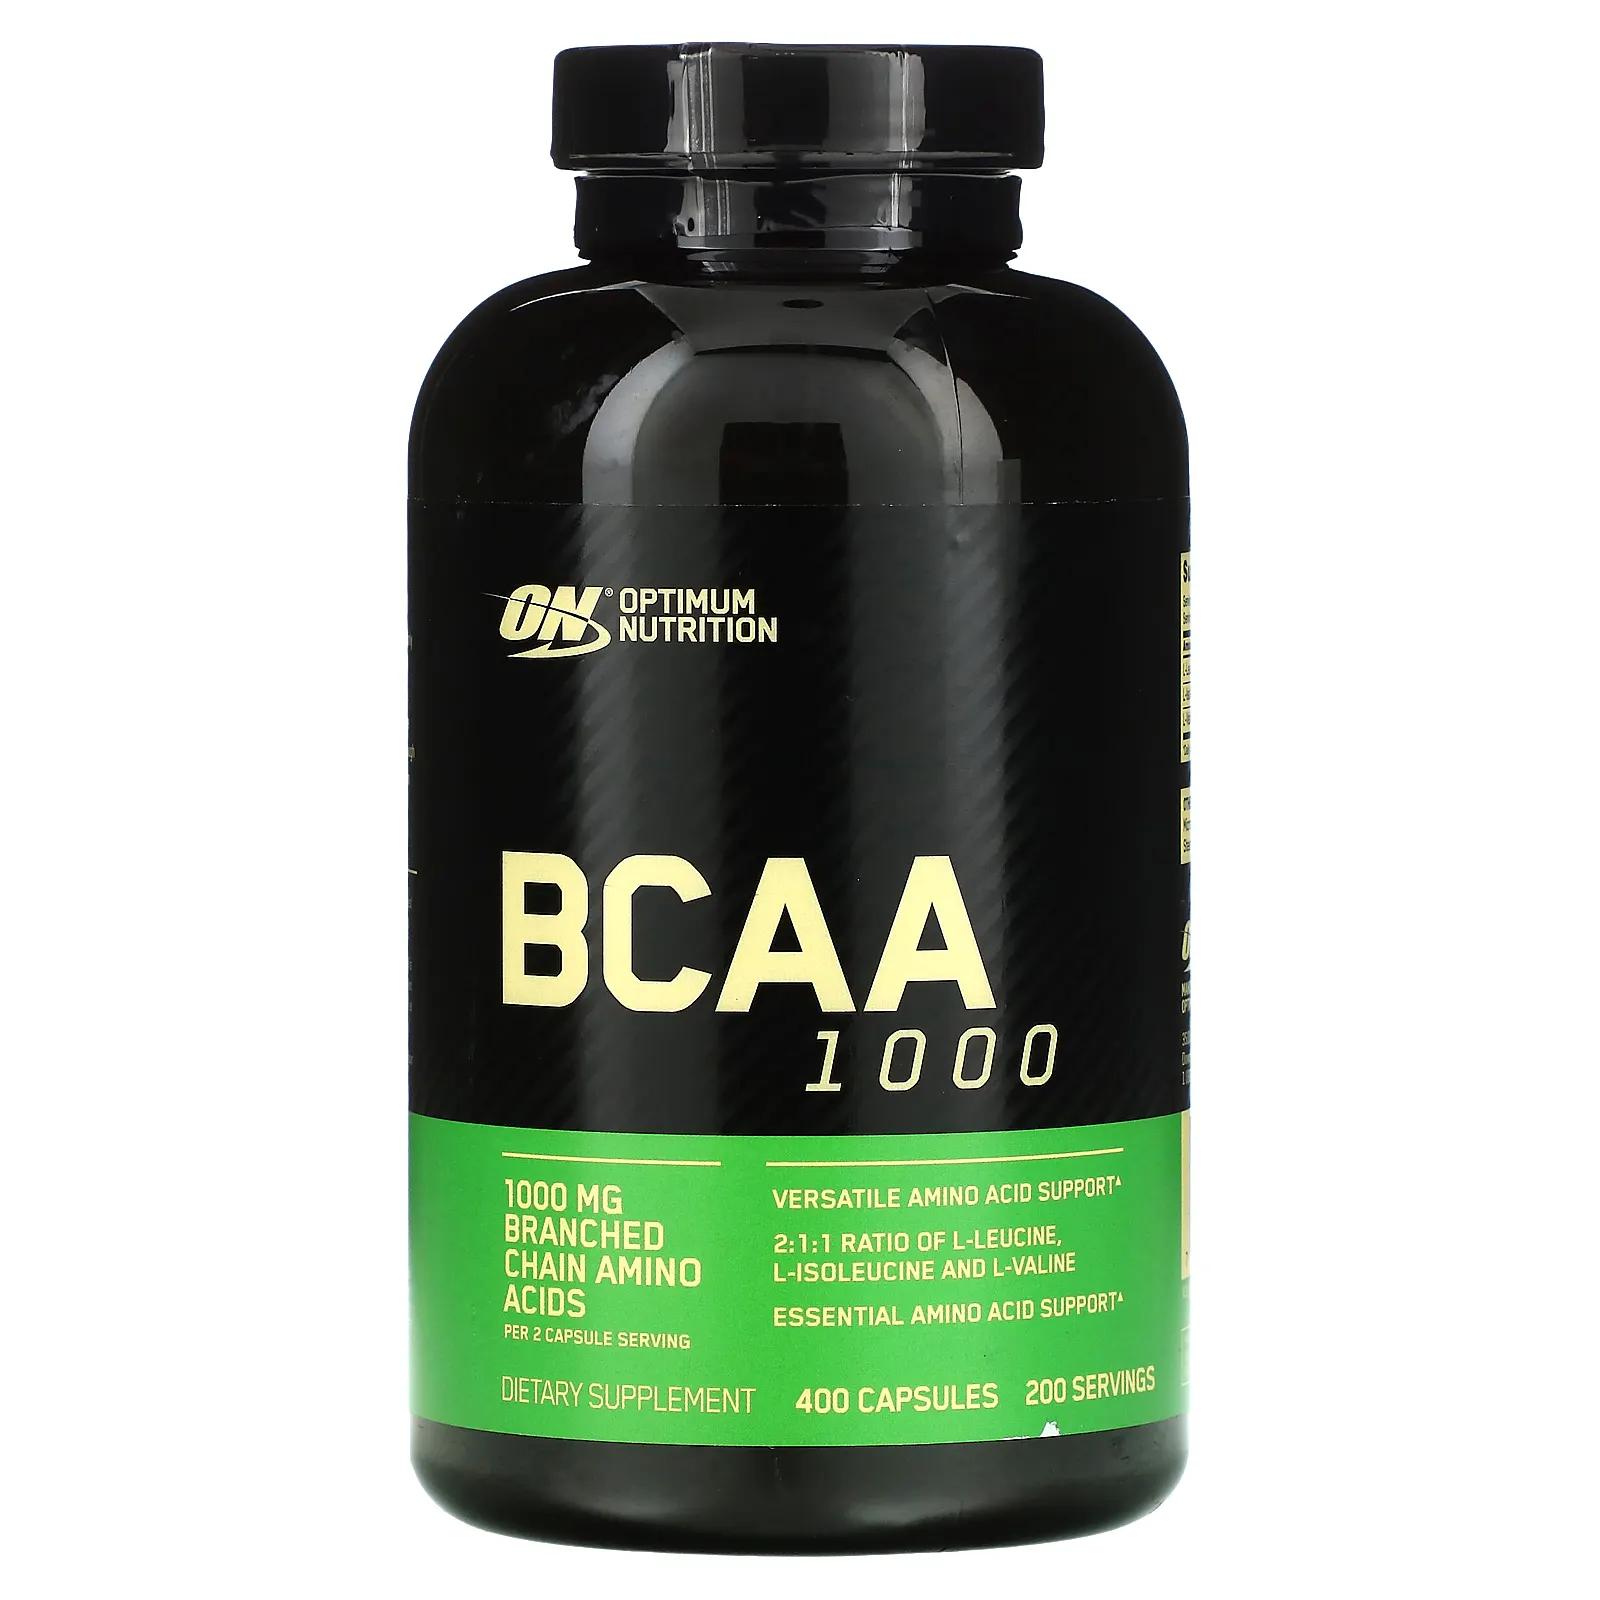 Optimum Nutrition BCAA 1000 Caps мега упаковка 1 г 400 капсул